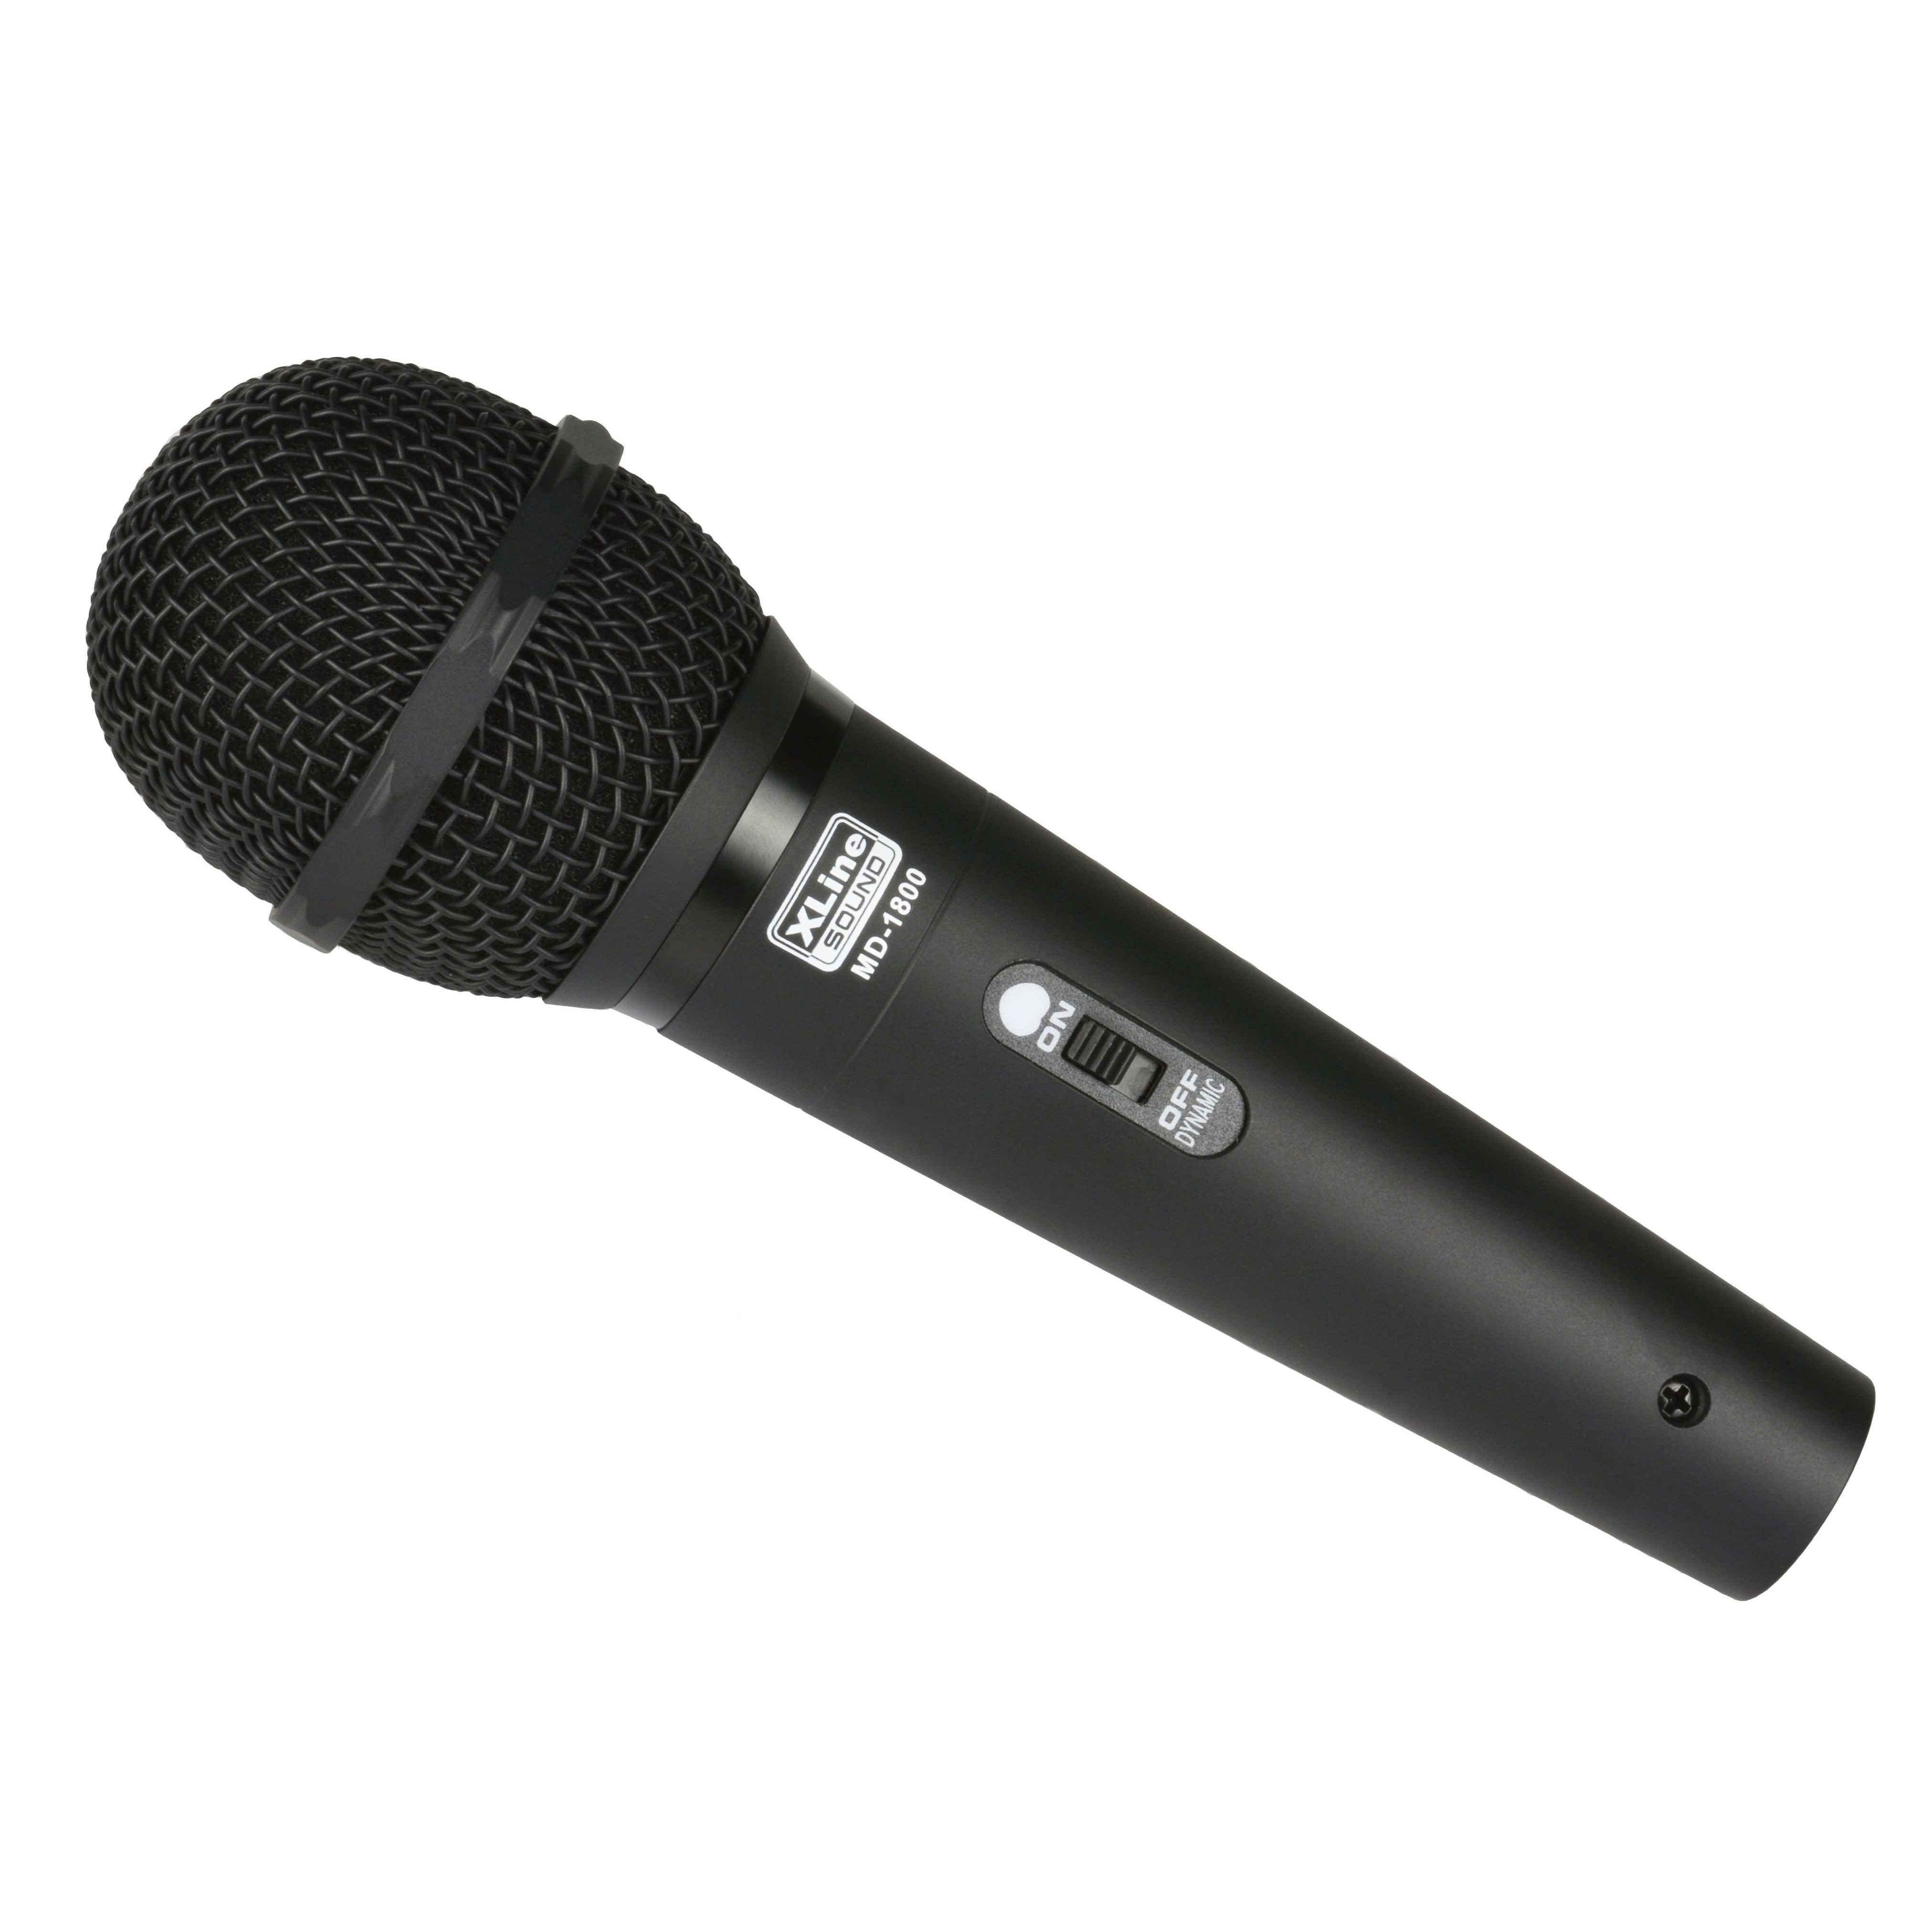 XLine MD-1800 Динамические микрофоны